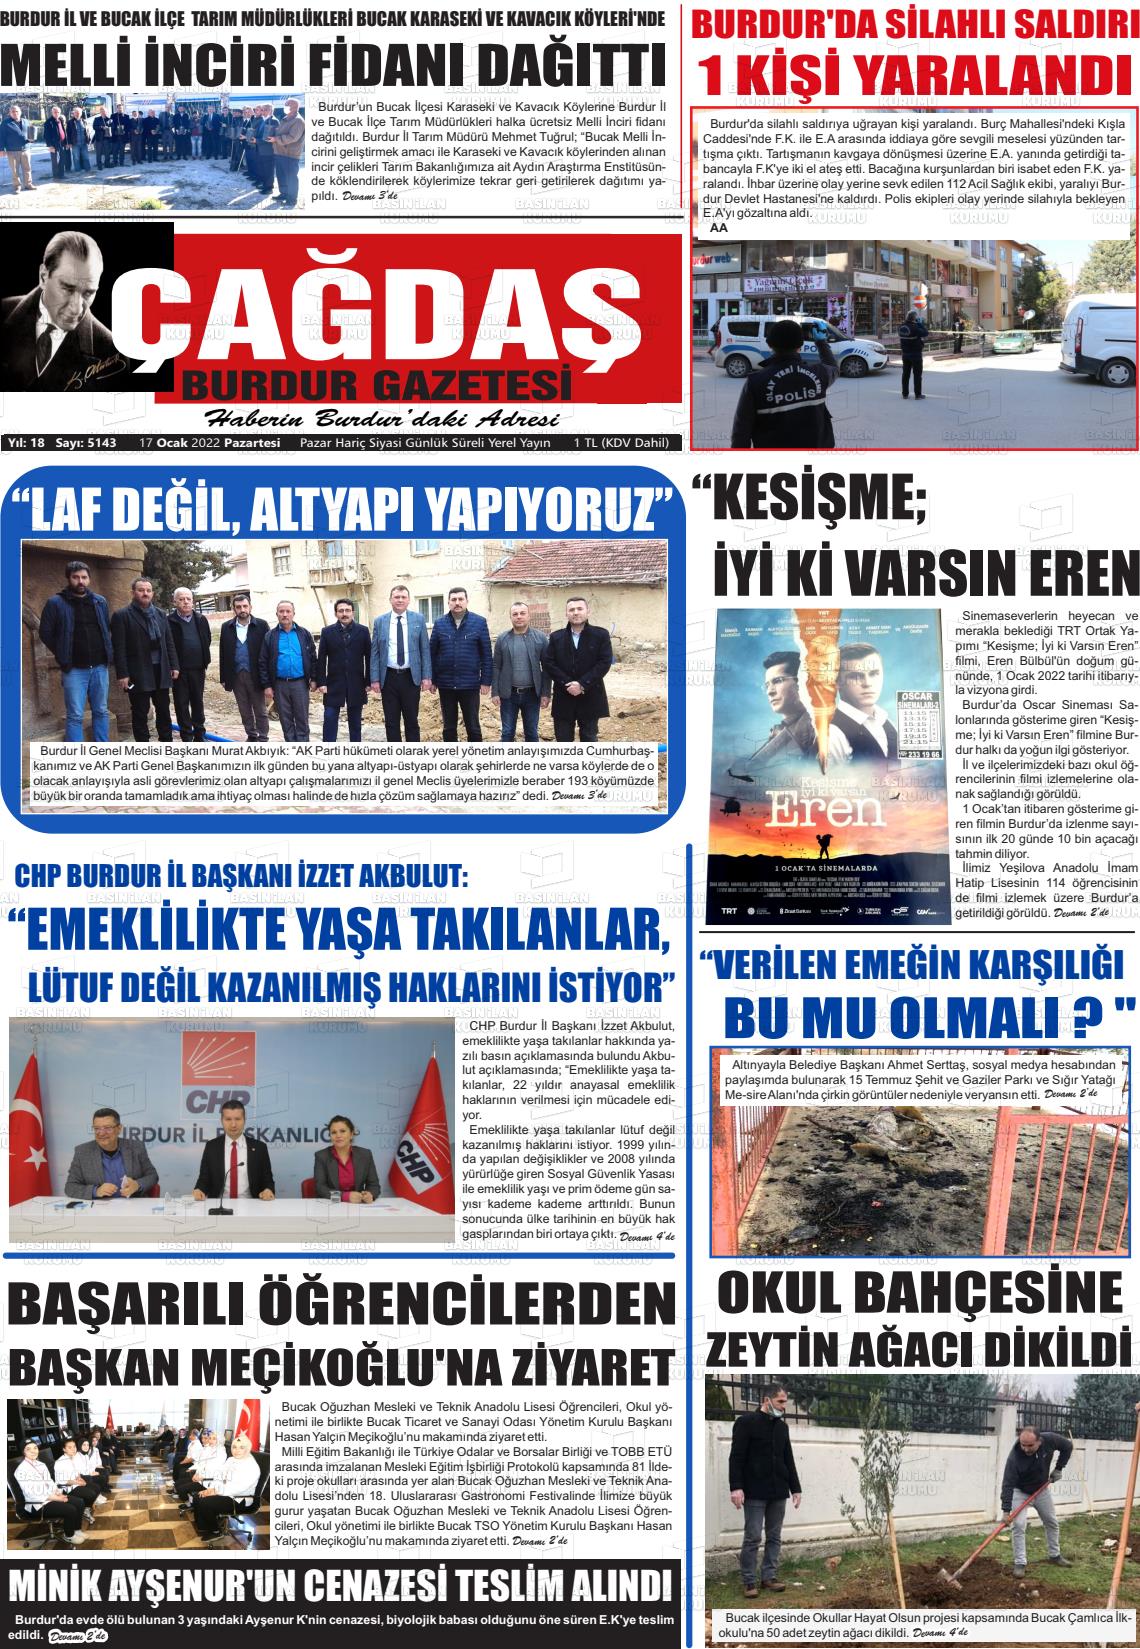 17 Ocak 2022 Çağdaş Burdur Gazete Manşeti